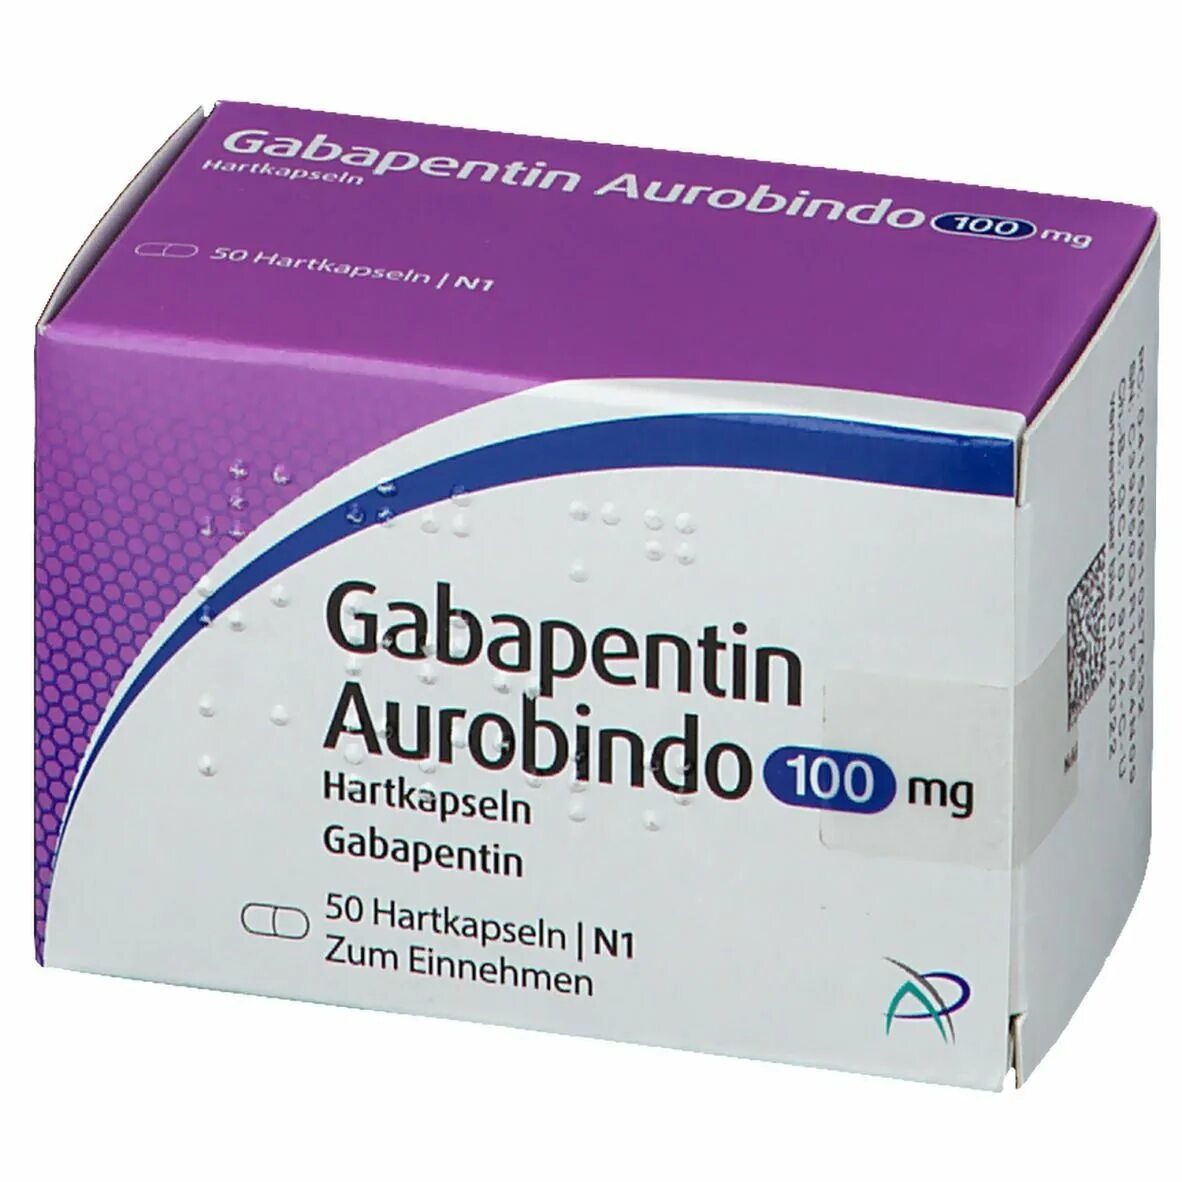 Сколько выводится габапентин. Габапентин канон 100 мг. Таблетки габапентин канон. Габапентин 600 мг. Габапентин канон эффект.